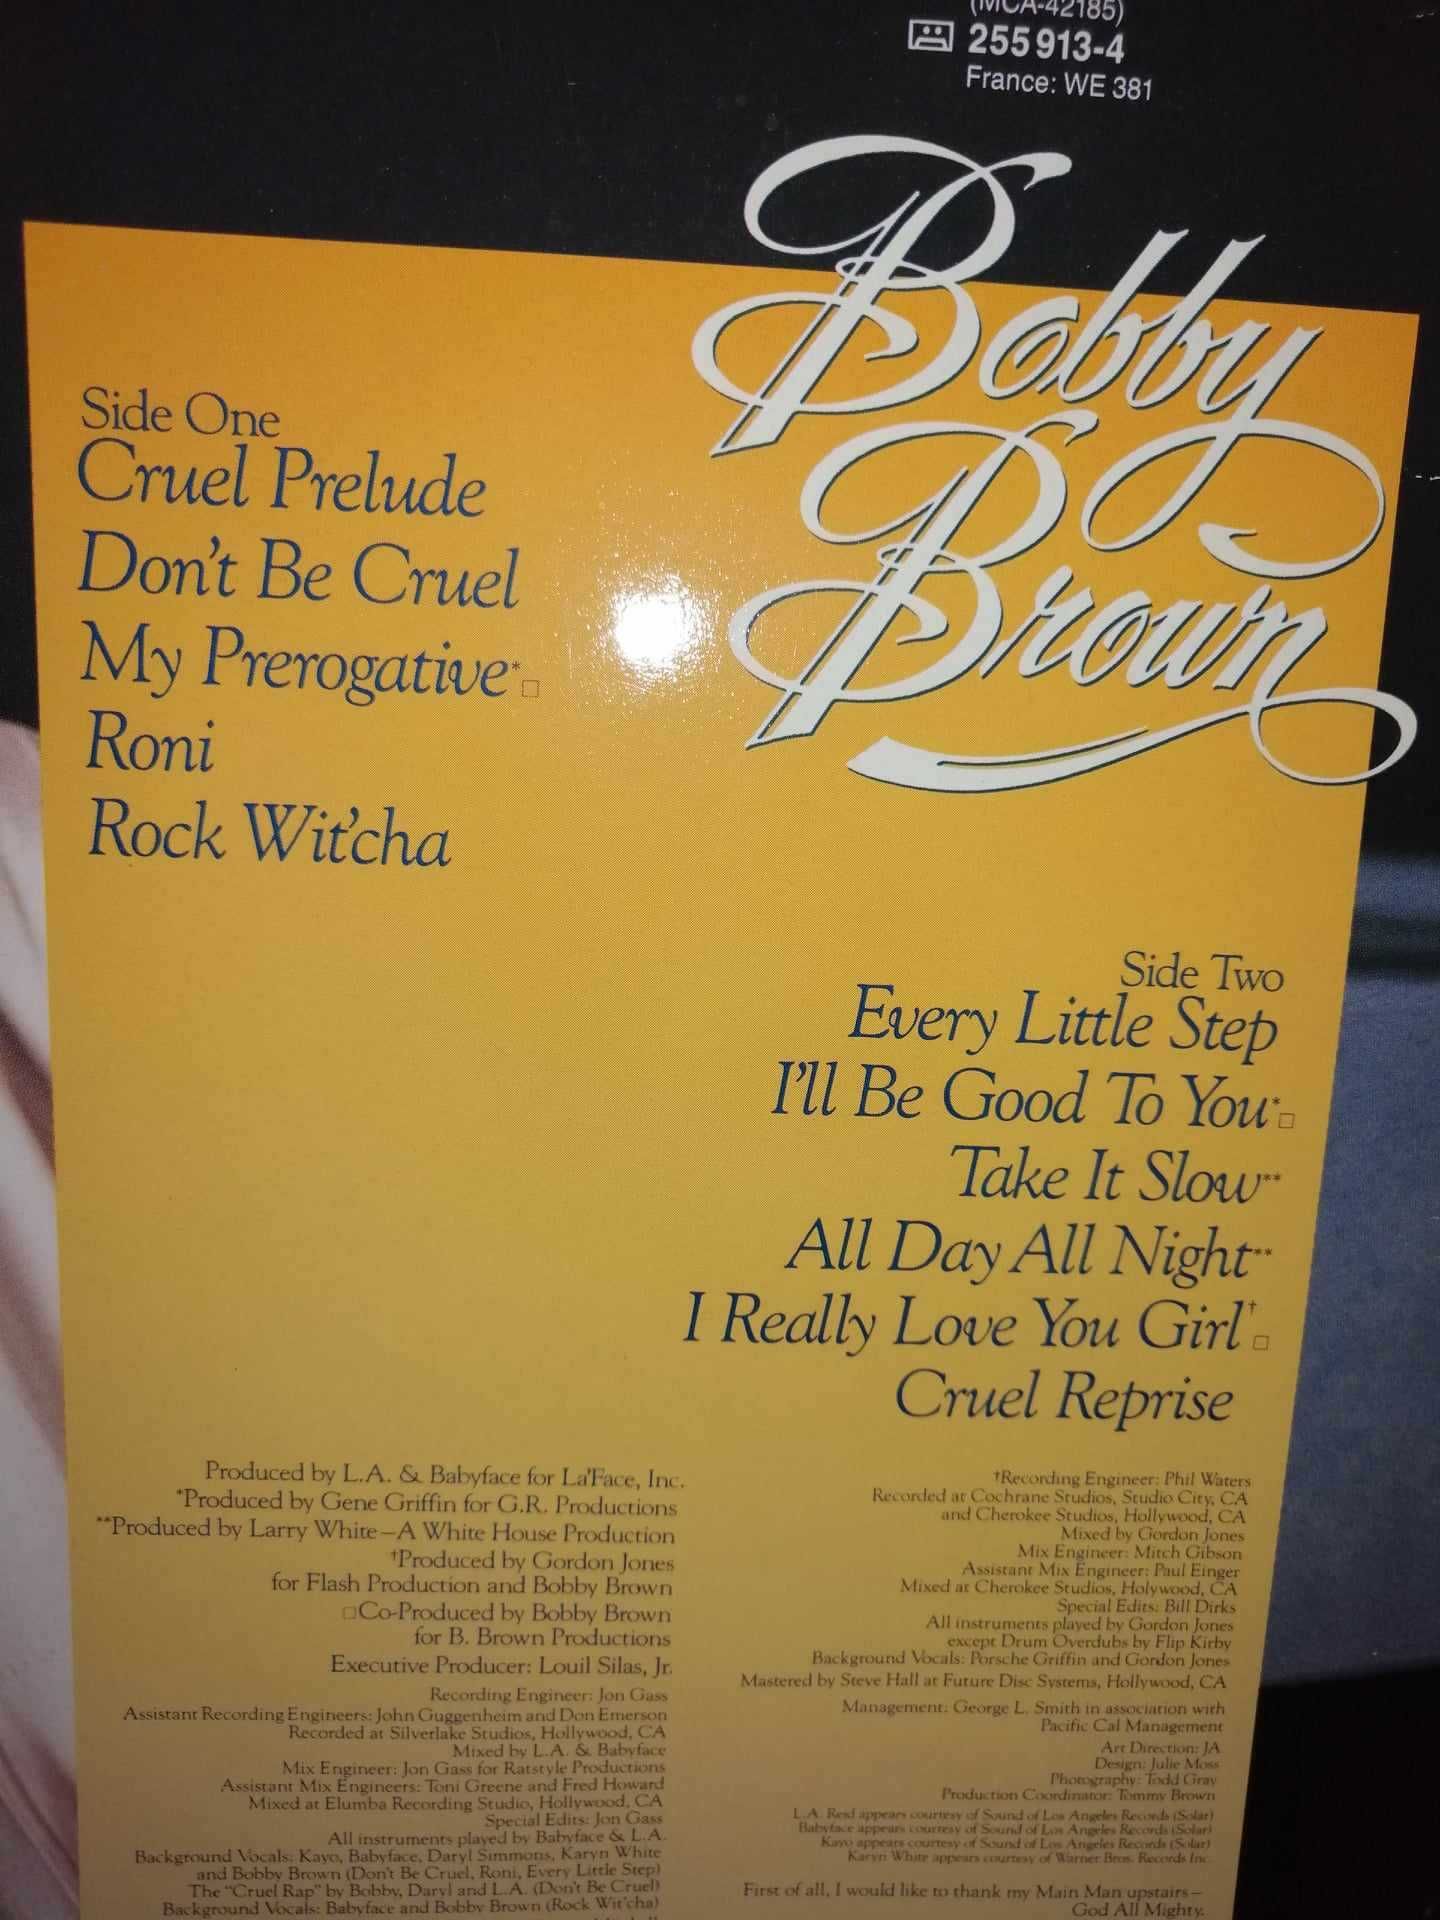 disc albume LP vinil Donna Summer Bobby Brown Howard Jones